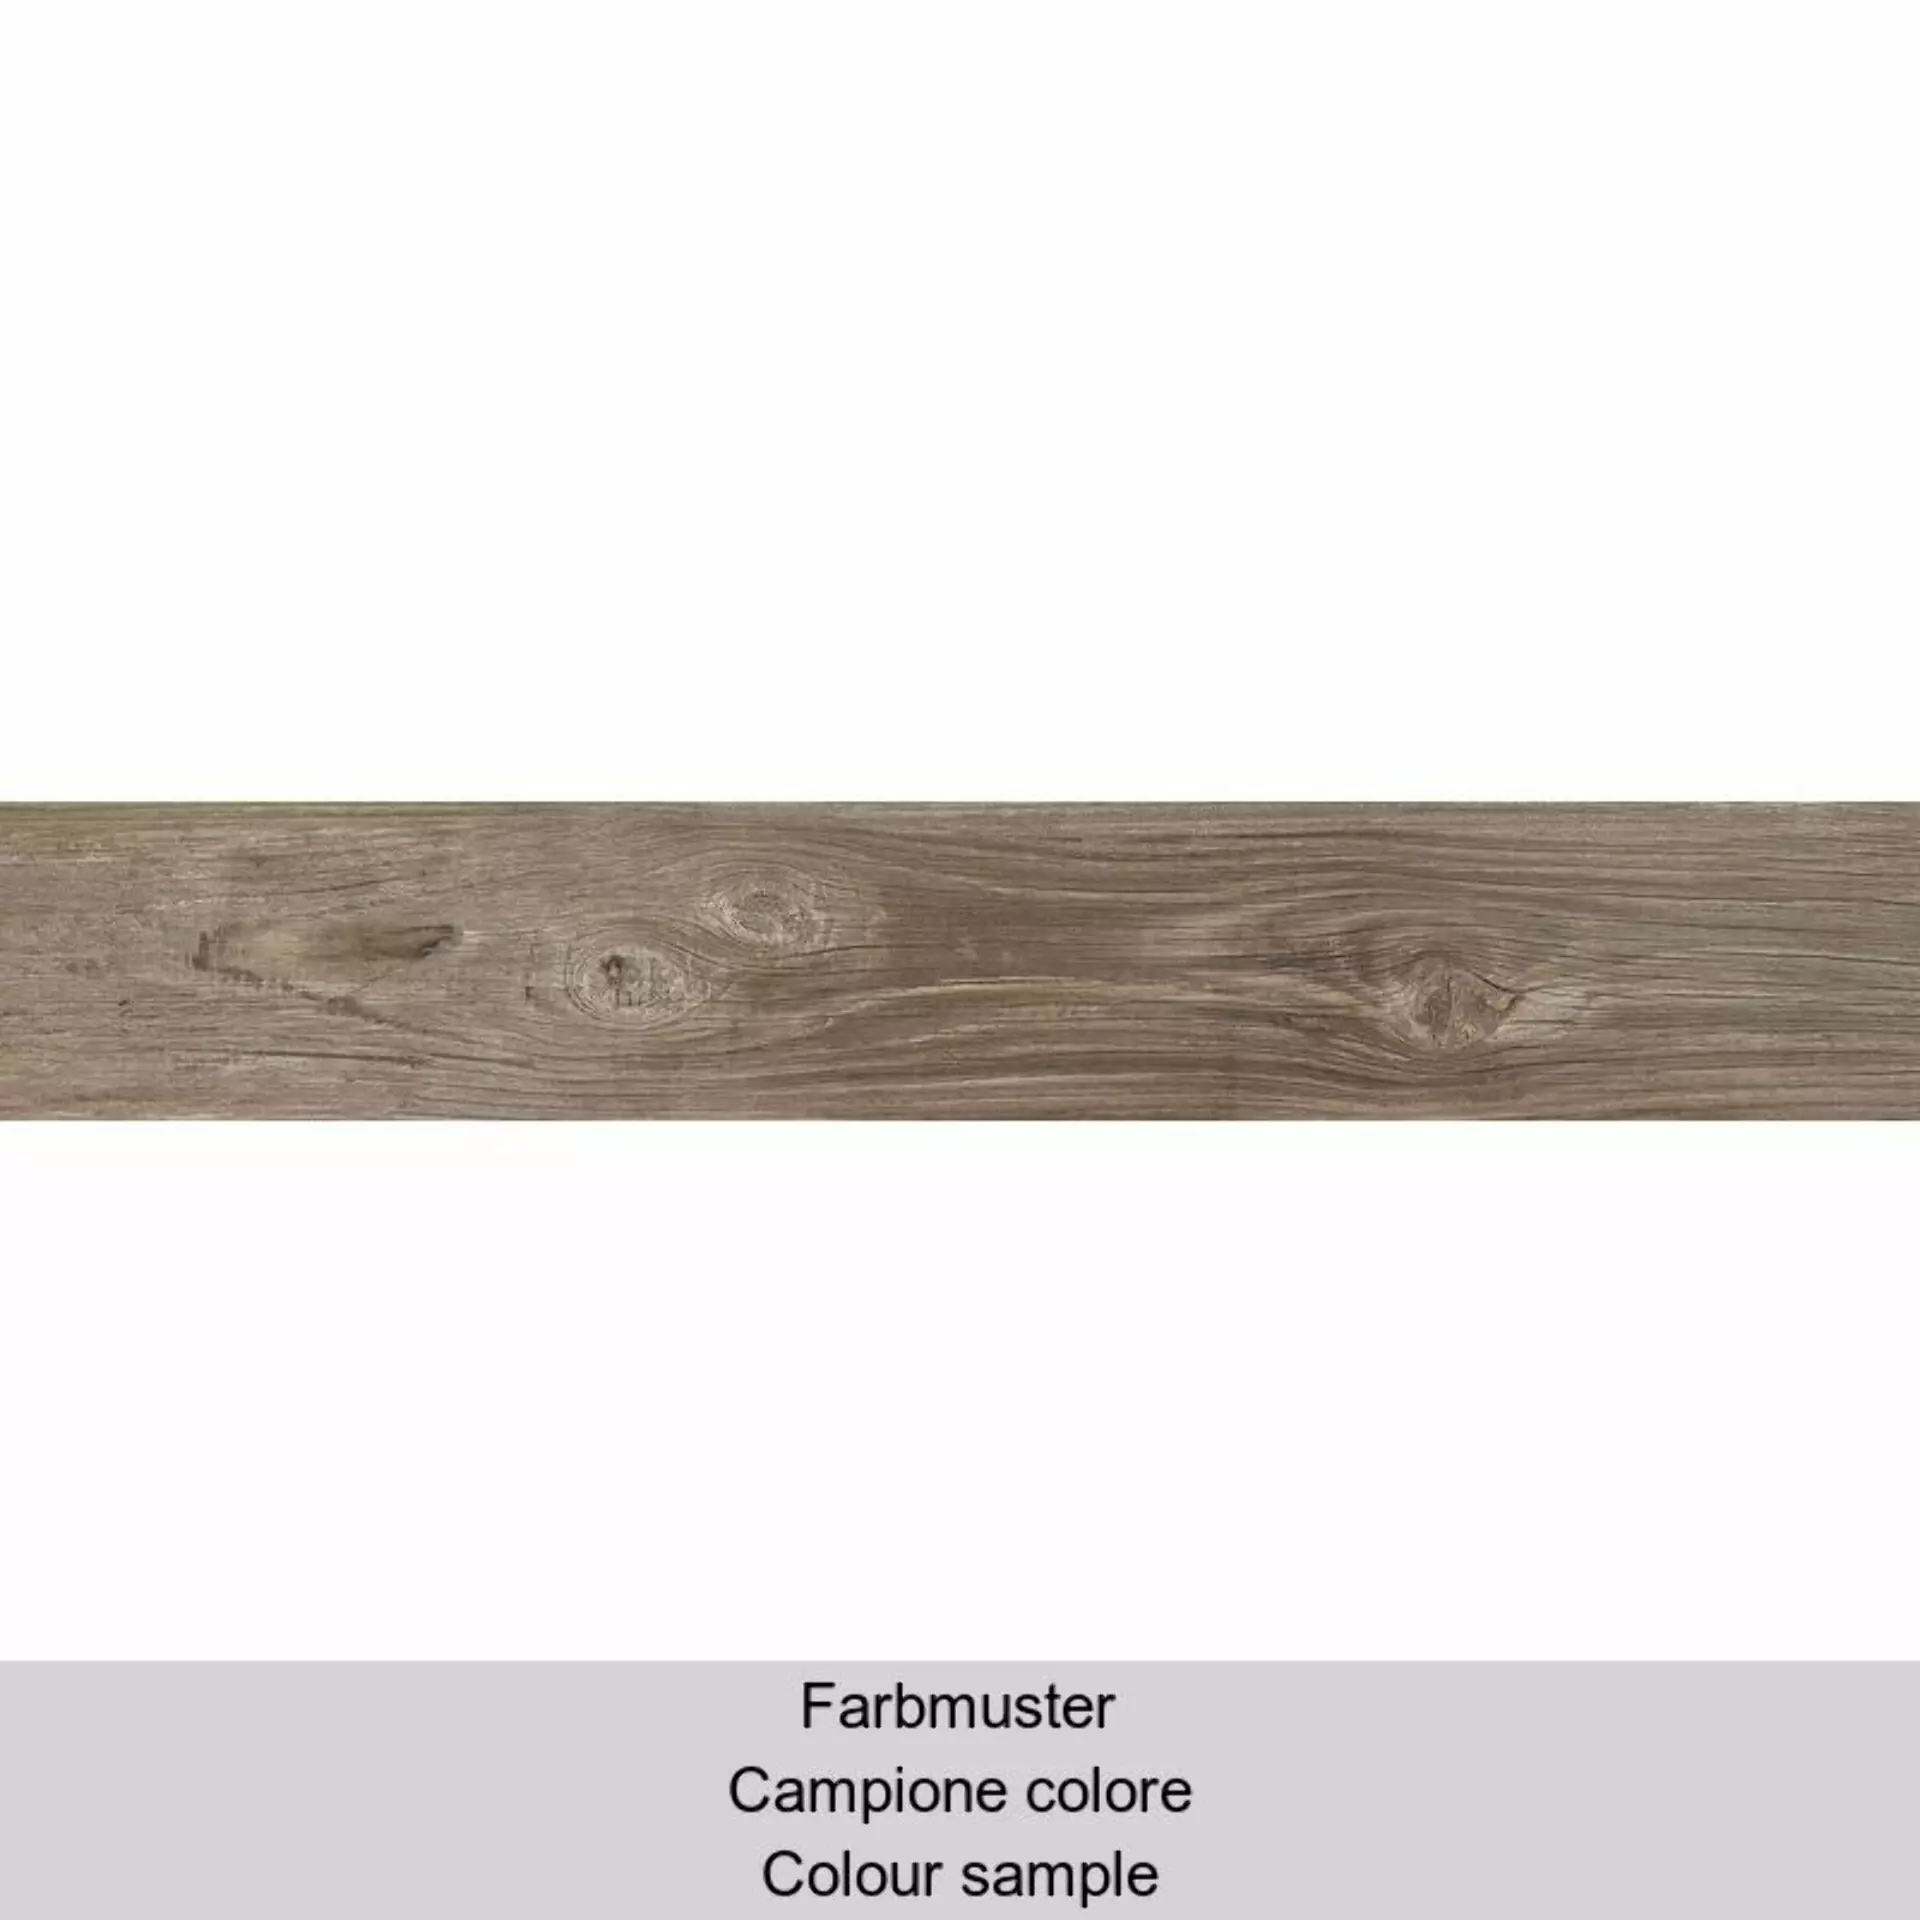 Casalgrande Country Wood Greige Naturale – Matt 10230064 25x151cm rectified 10mm